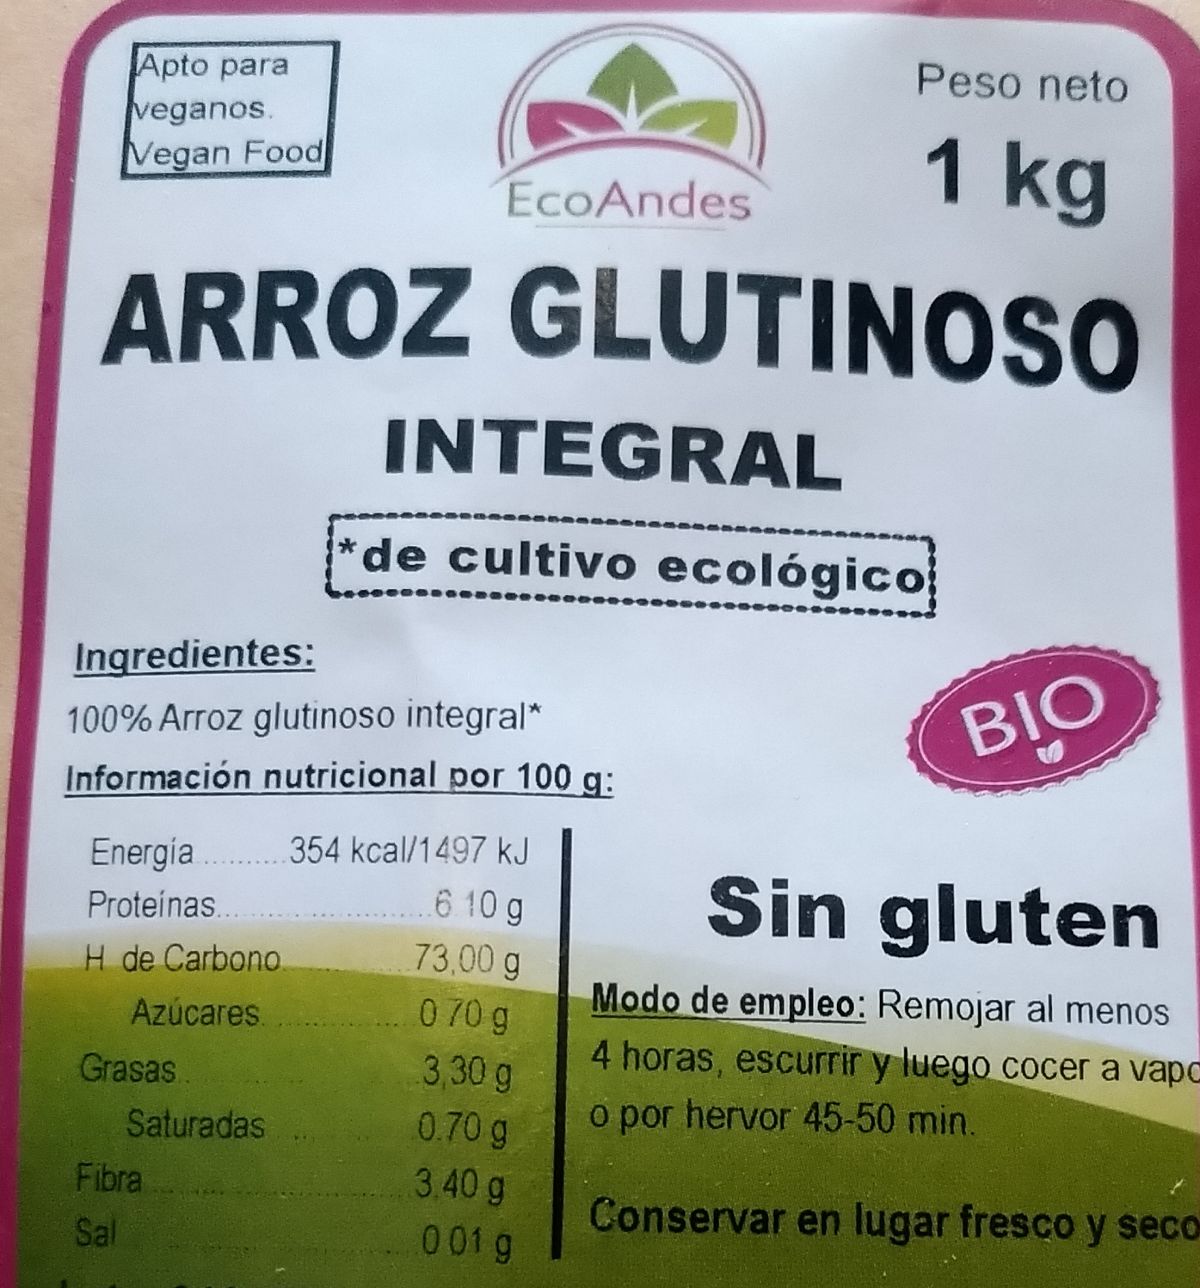 EcoAndes - Arroz glutinoso 1kg